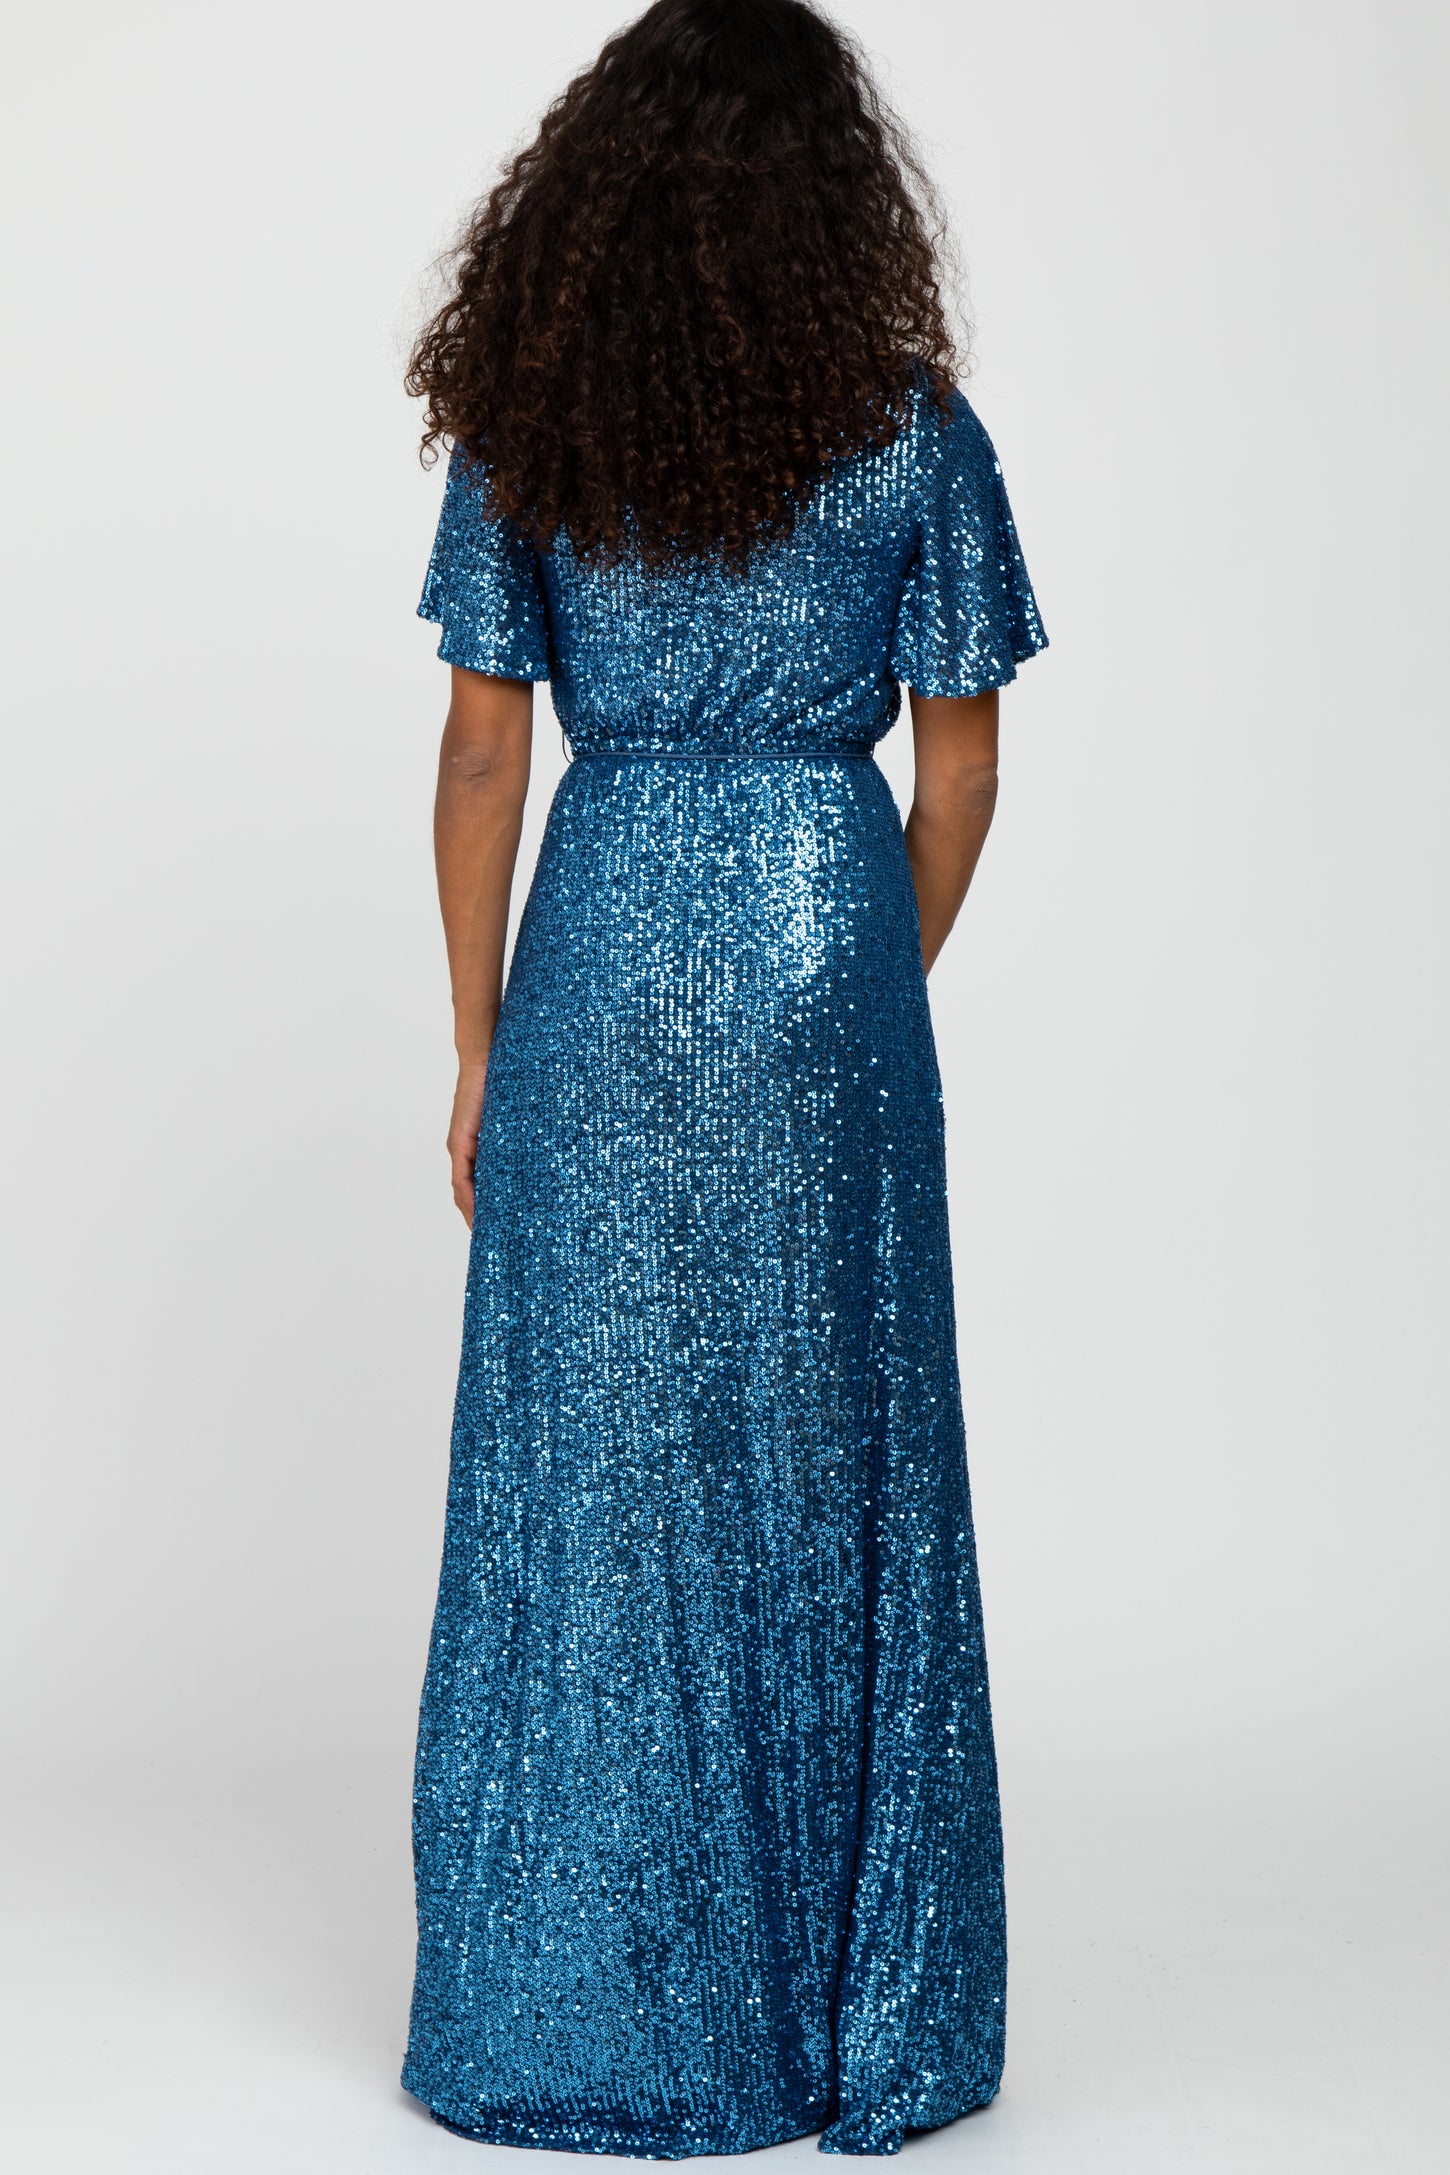 Blue Sequin Short Sleeve Maxi Dress